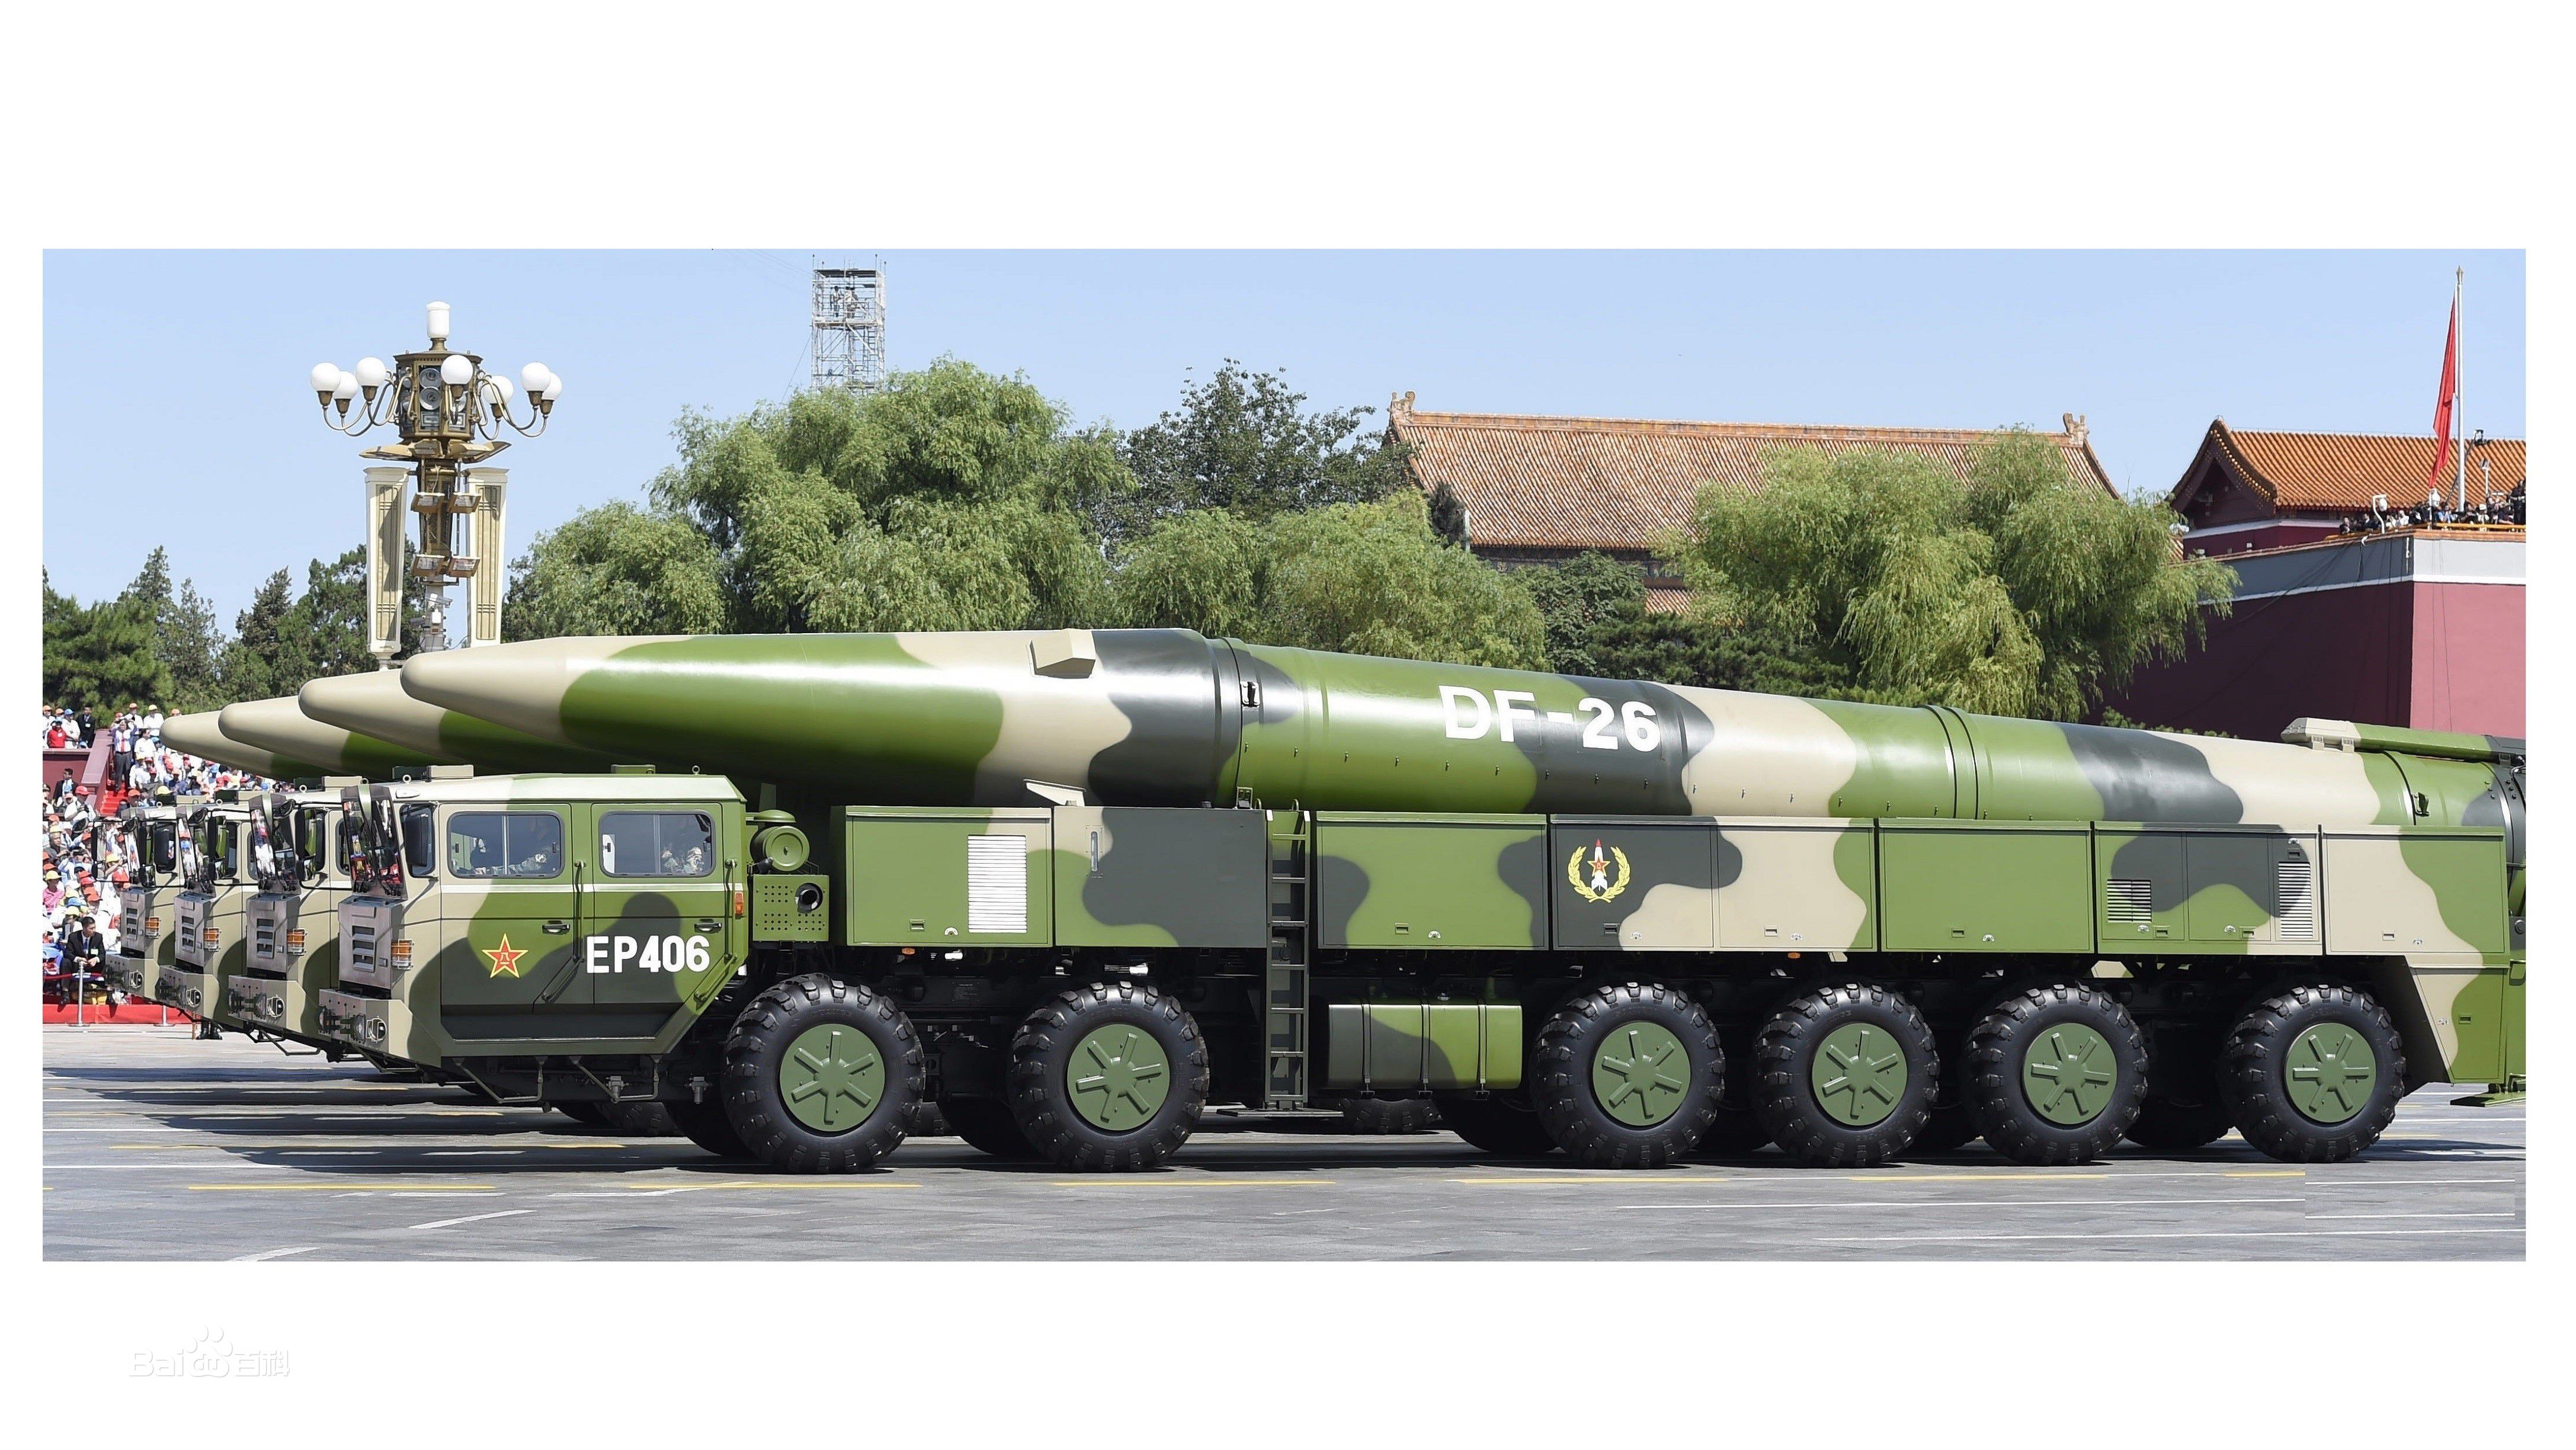 国防部证实:东风26型导弹已经列装火箭军部队!-信息快讯网